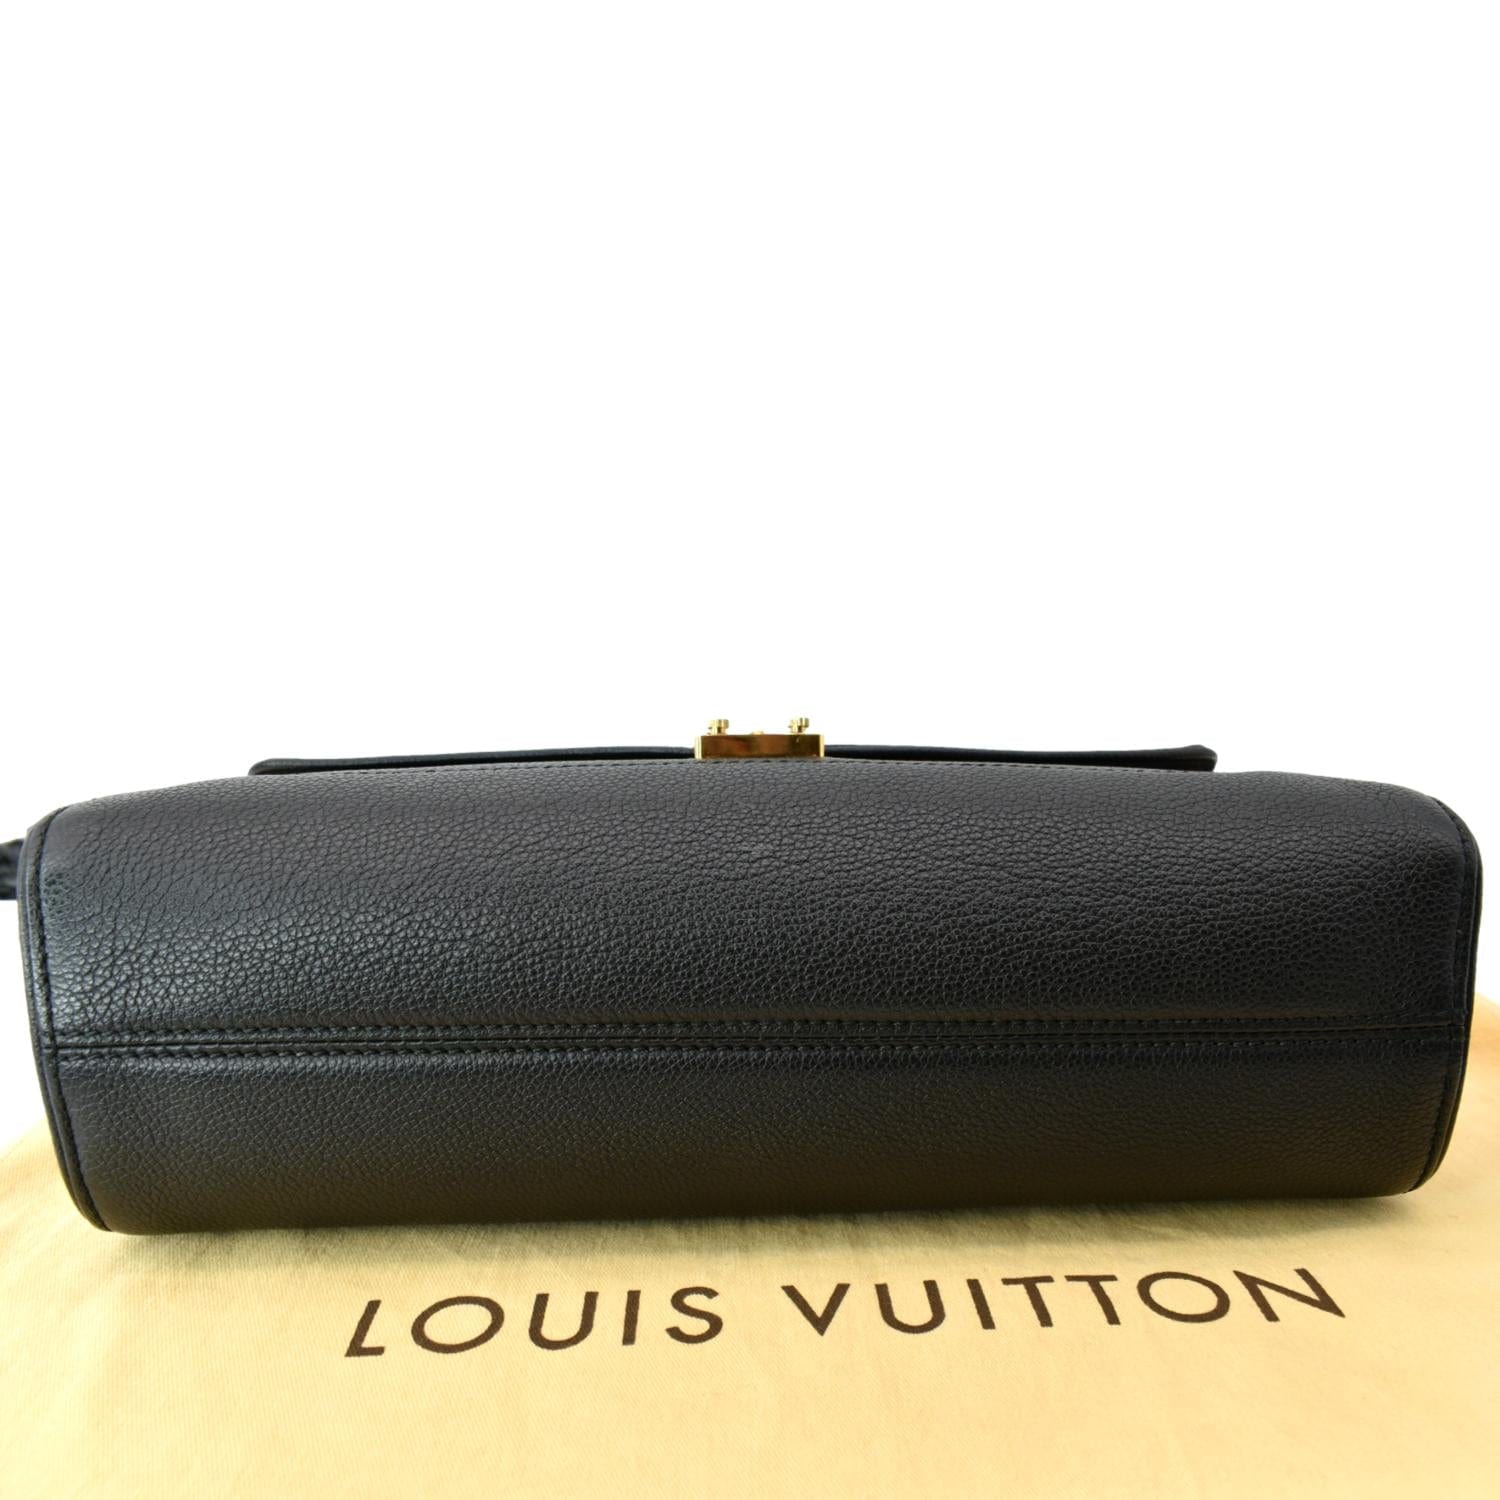 Authentic Louis Vuitton Concorde Vintage Leather Handbag Monogram